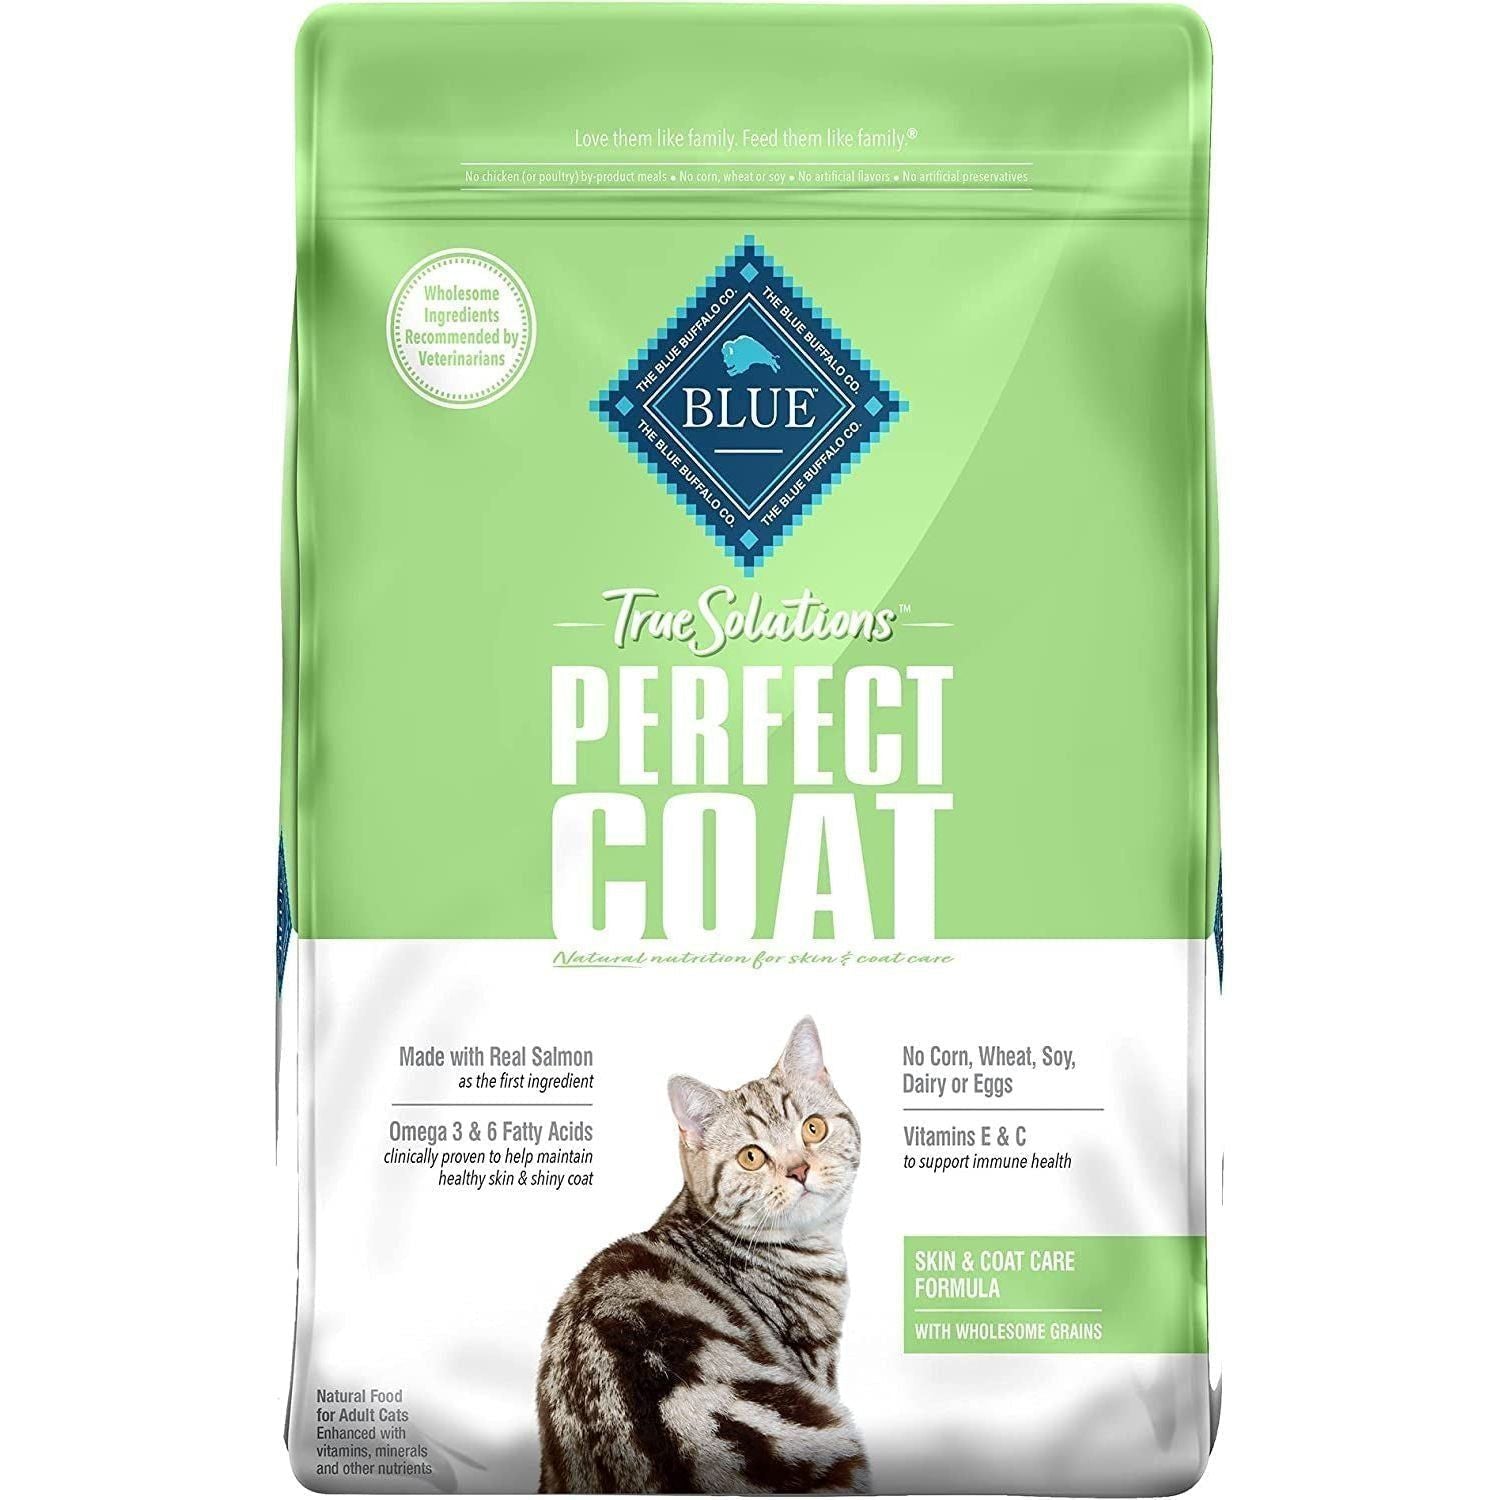 Natural Skin & Coat Care Dry Cat Food, Salmon - 11 Lb